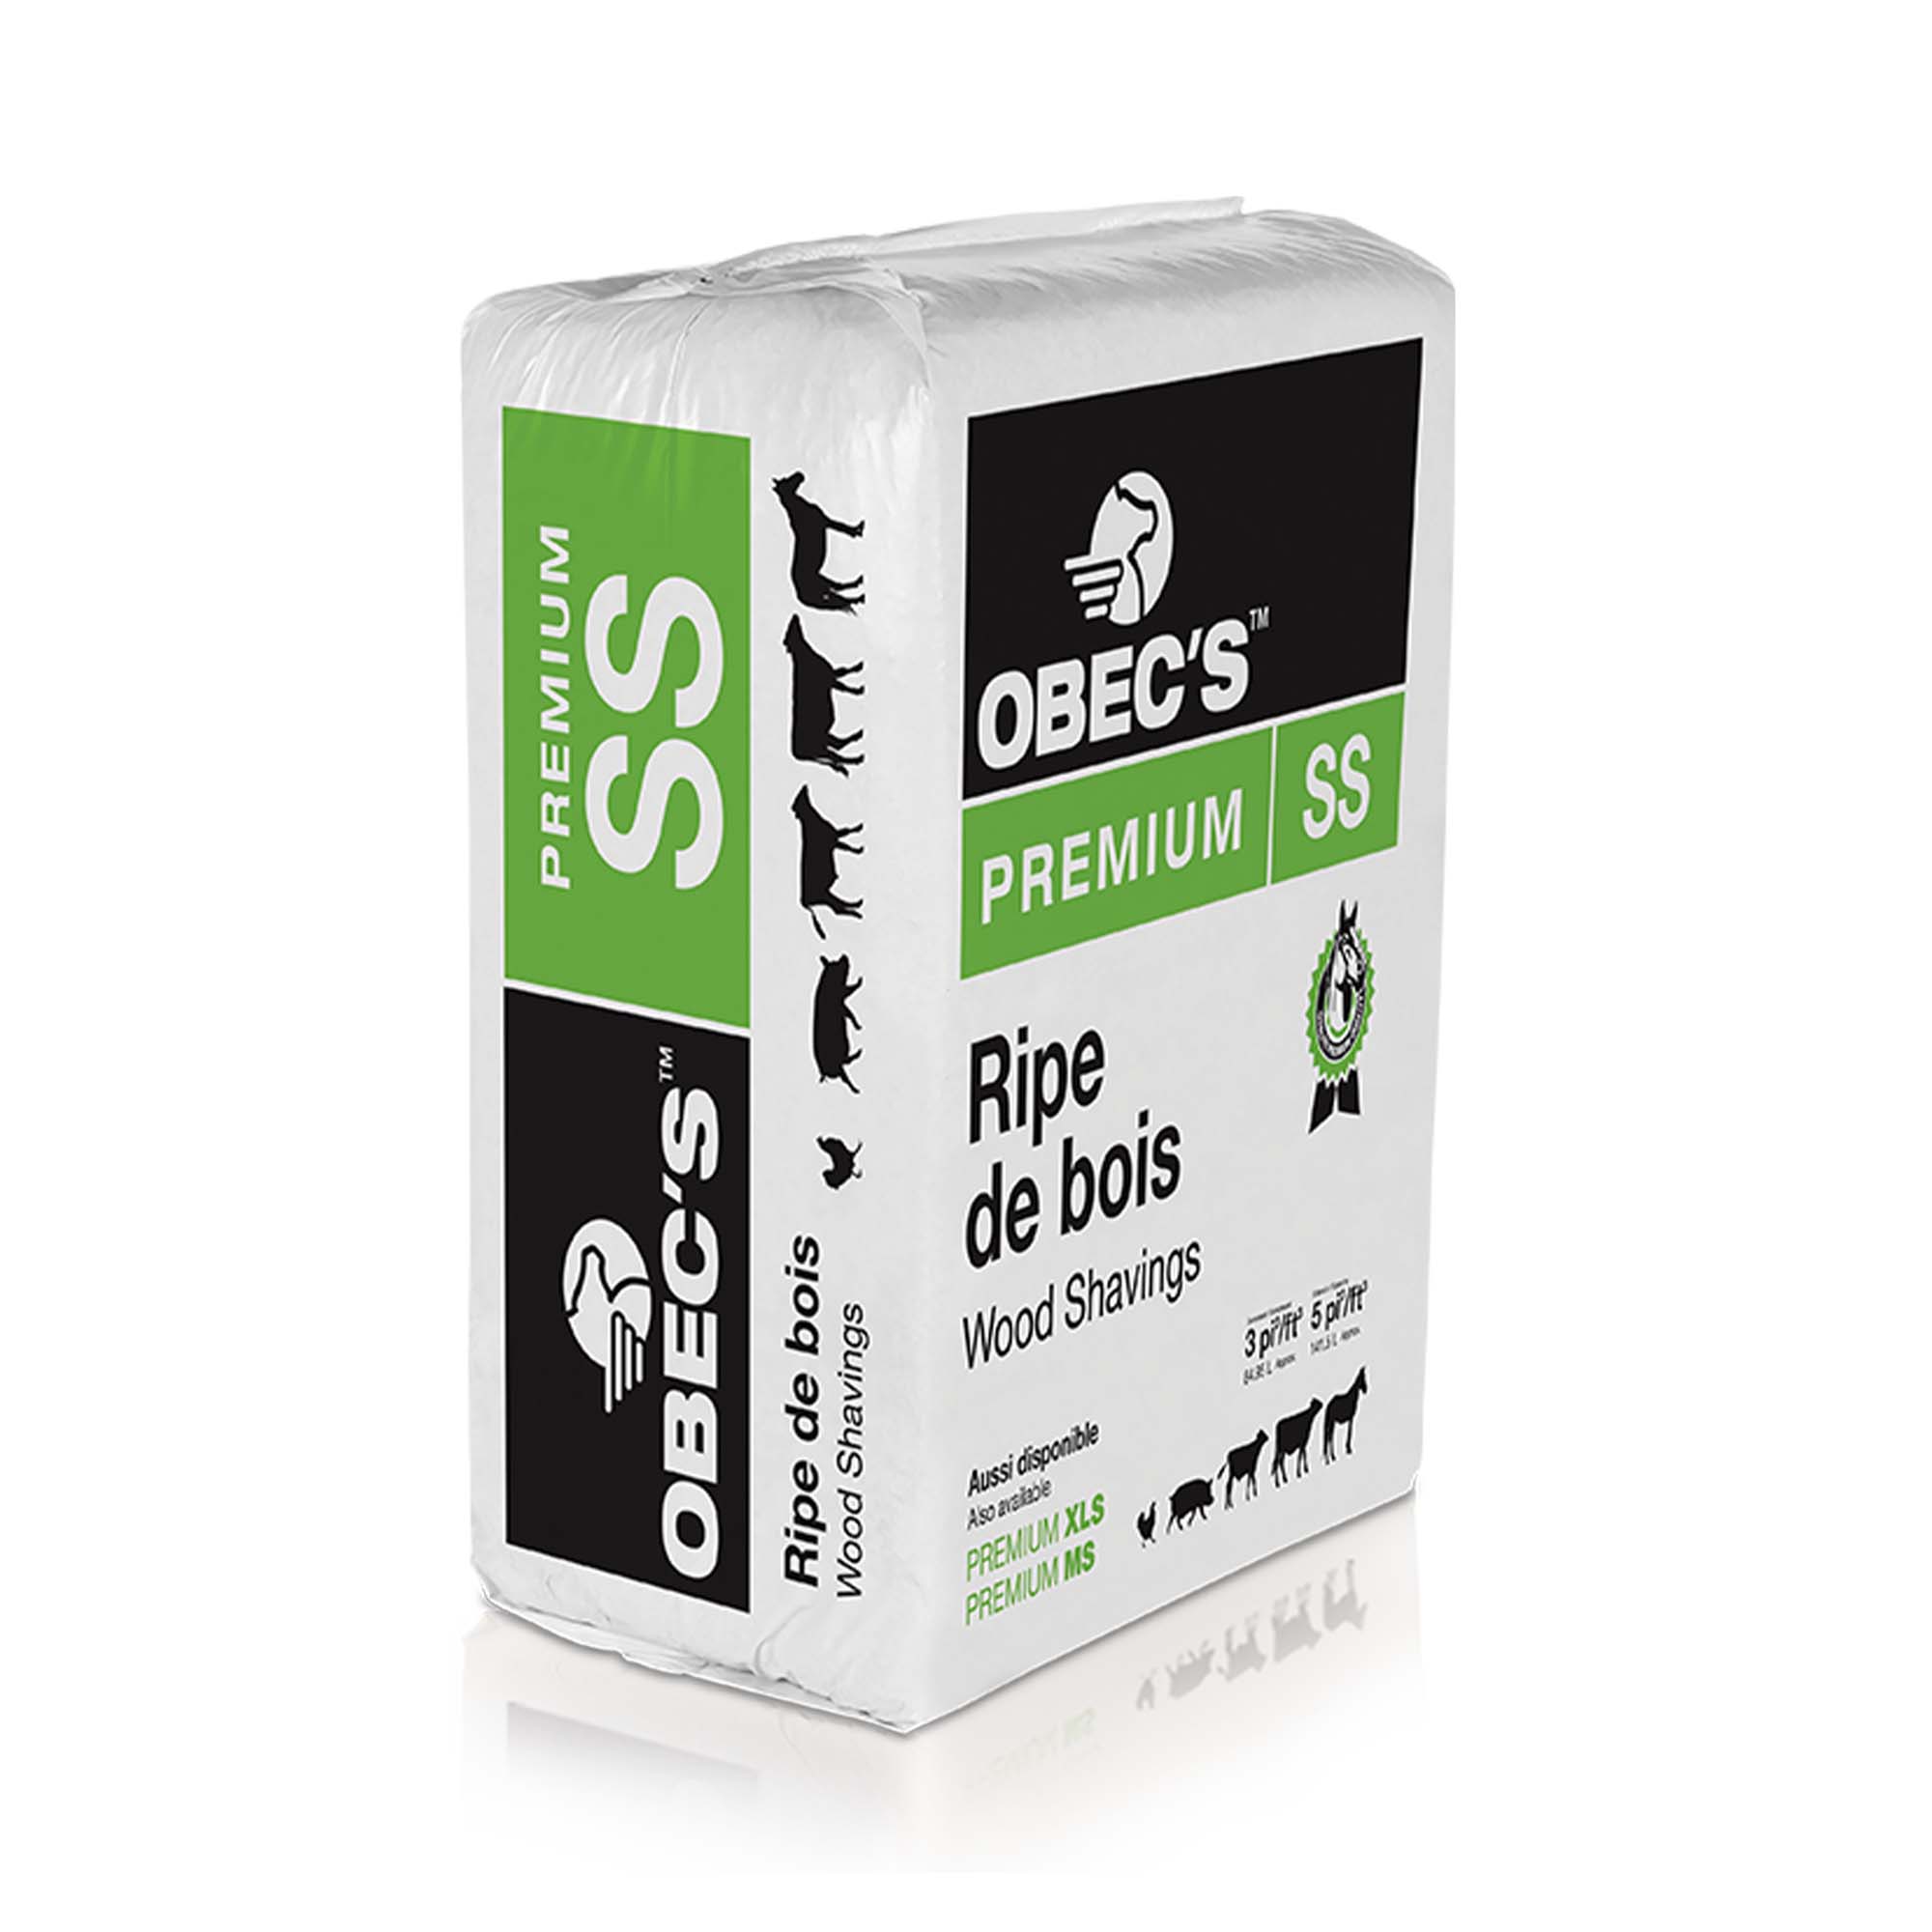 Ripe de bois Rip-O-Bec Premium SS 3 pi3 - flocons fin